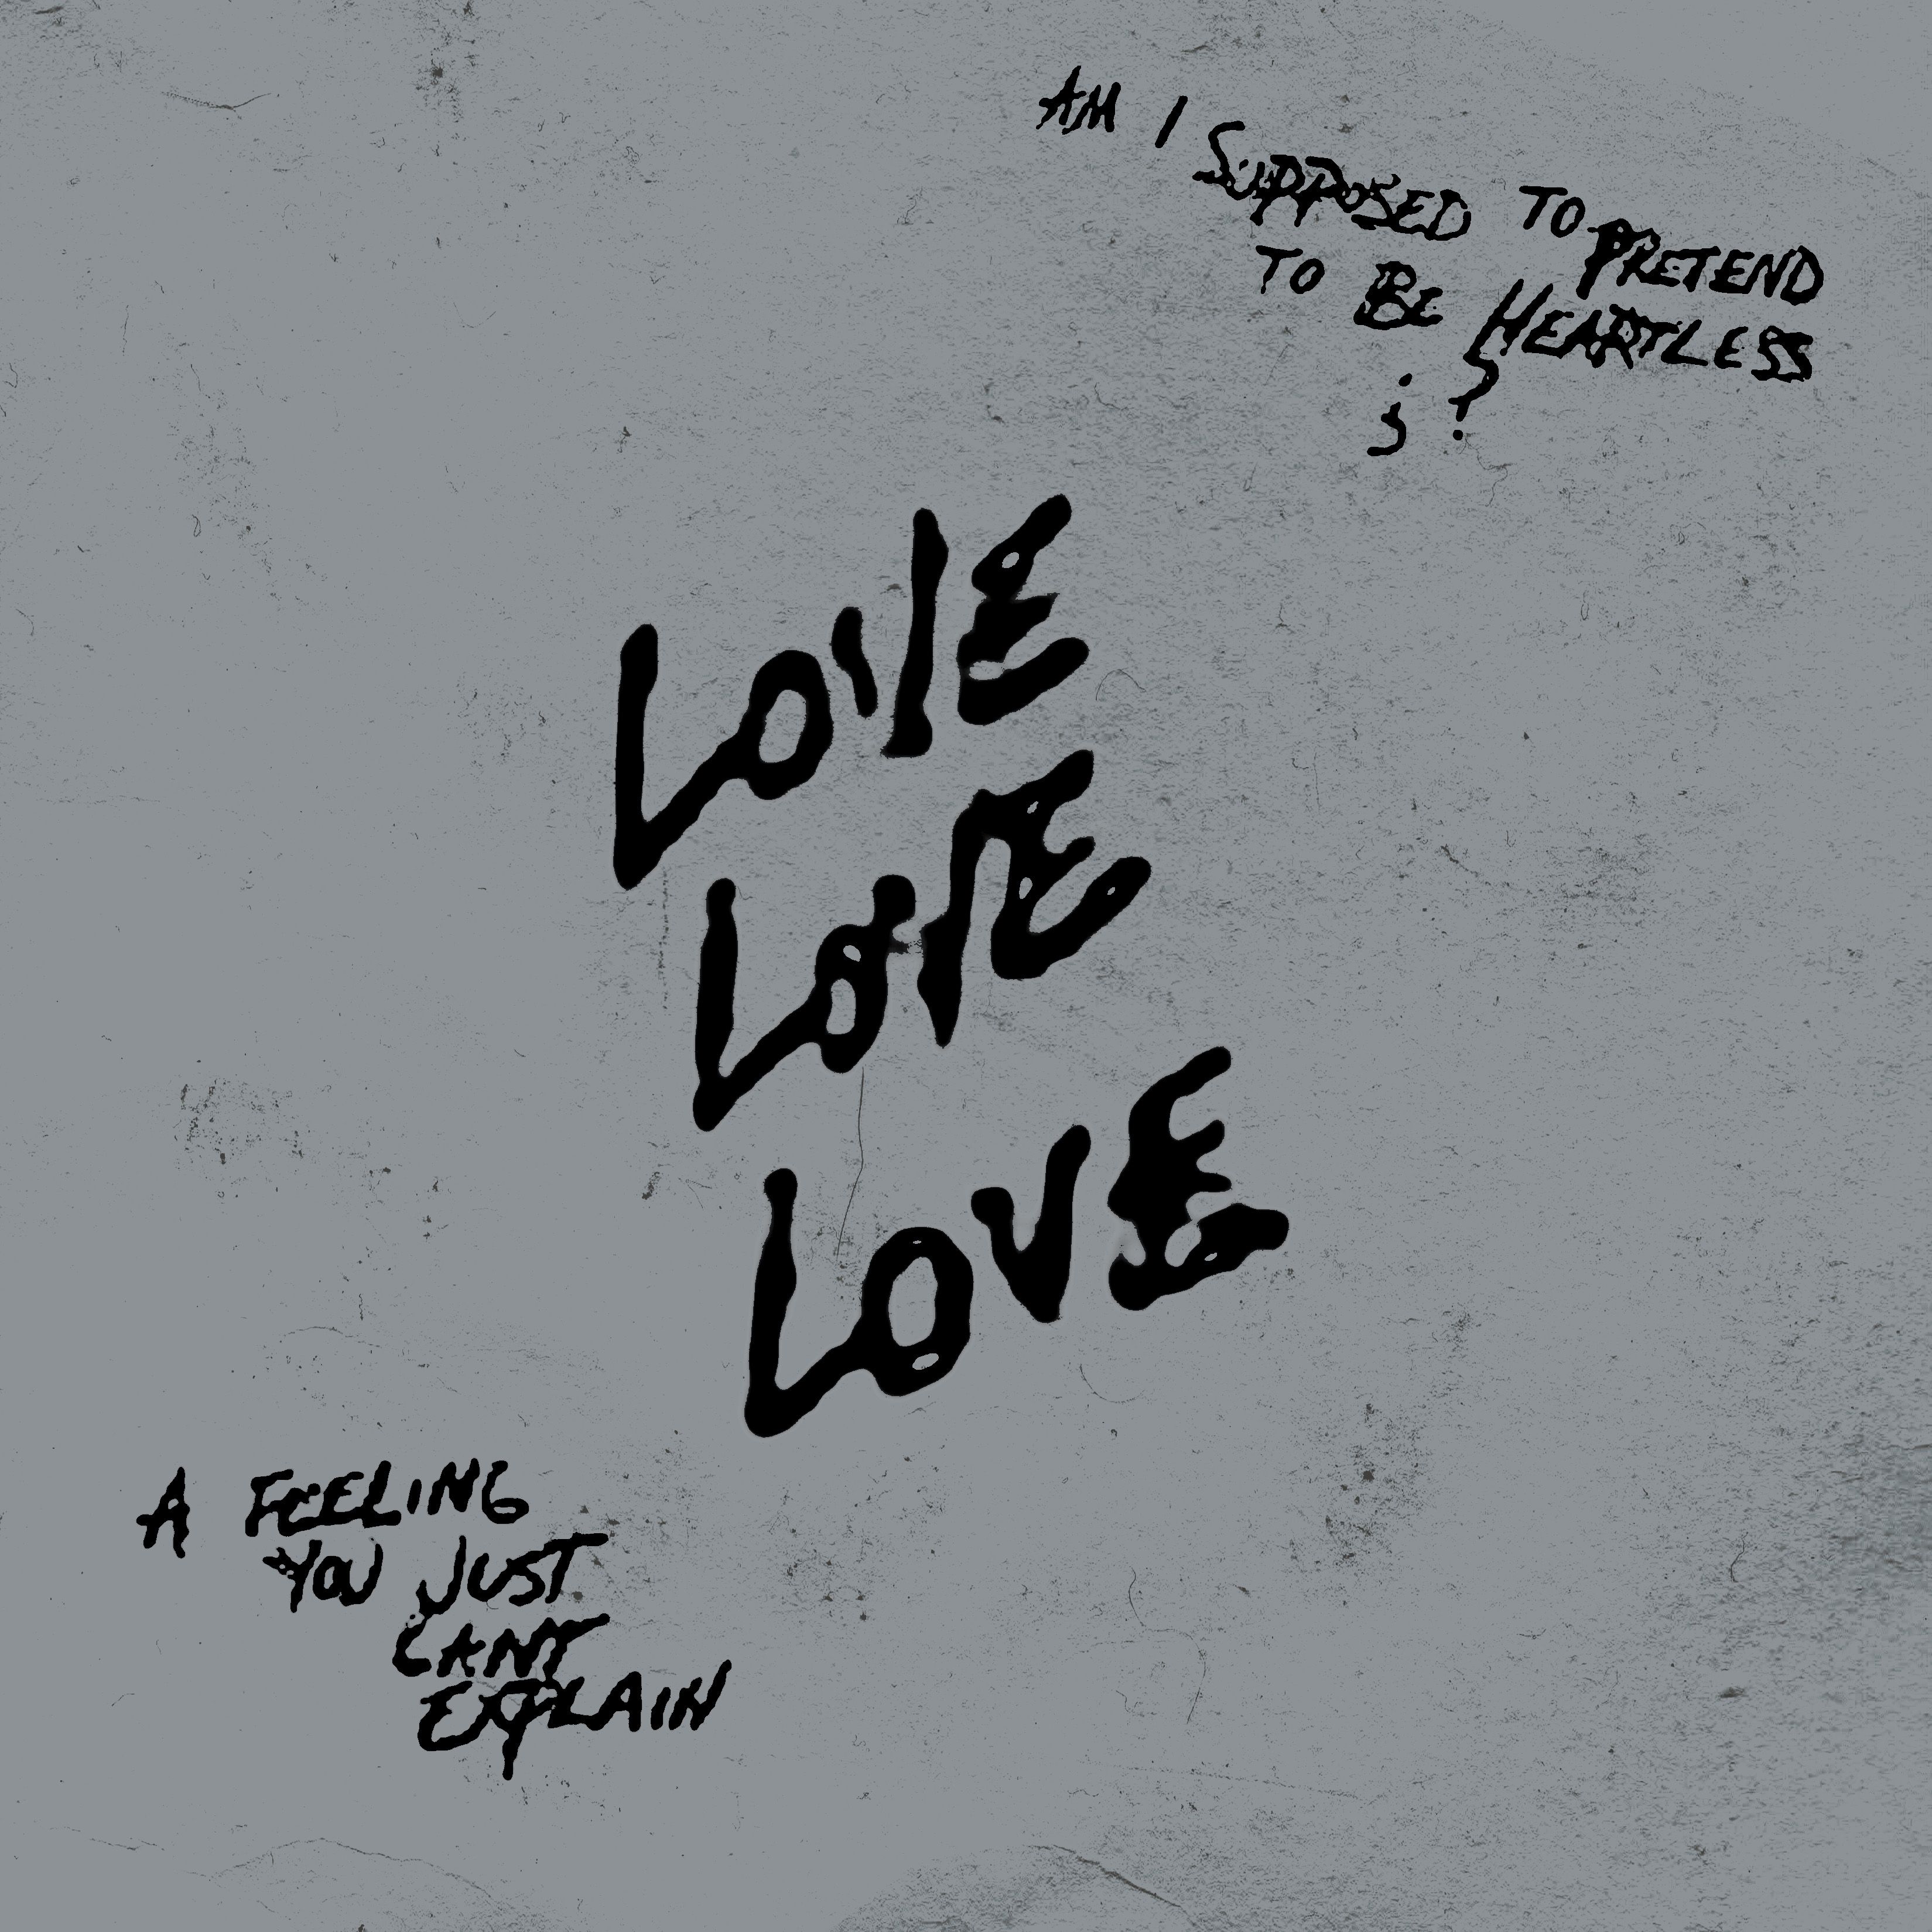 Deskargatu Kanye West & XXXTENTACION - True Love